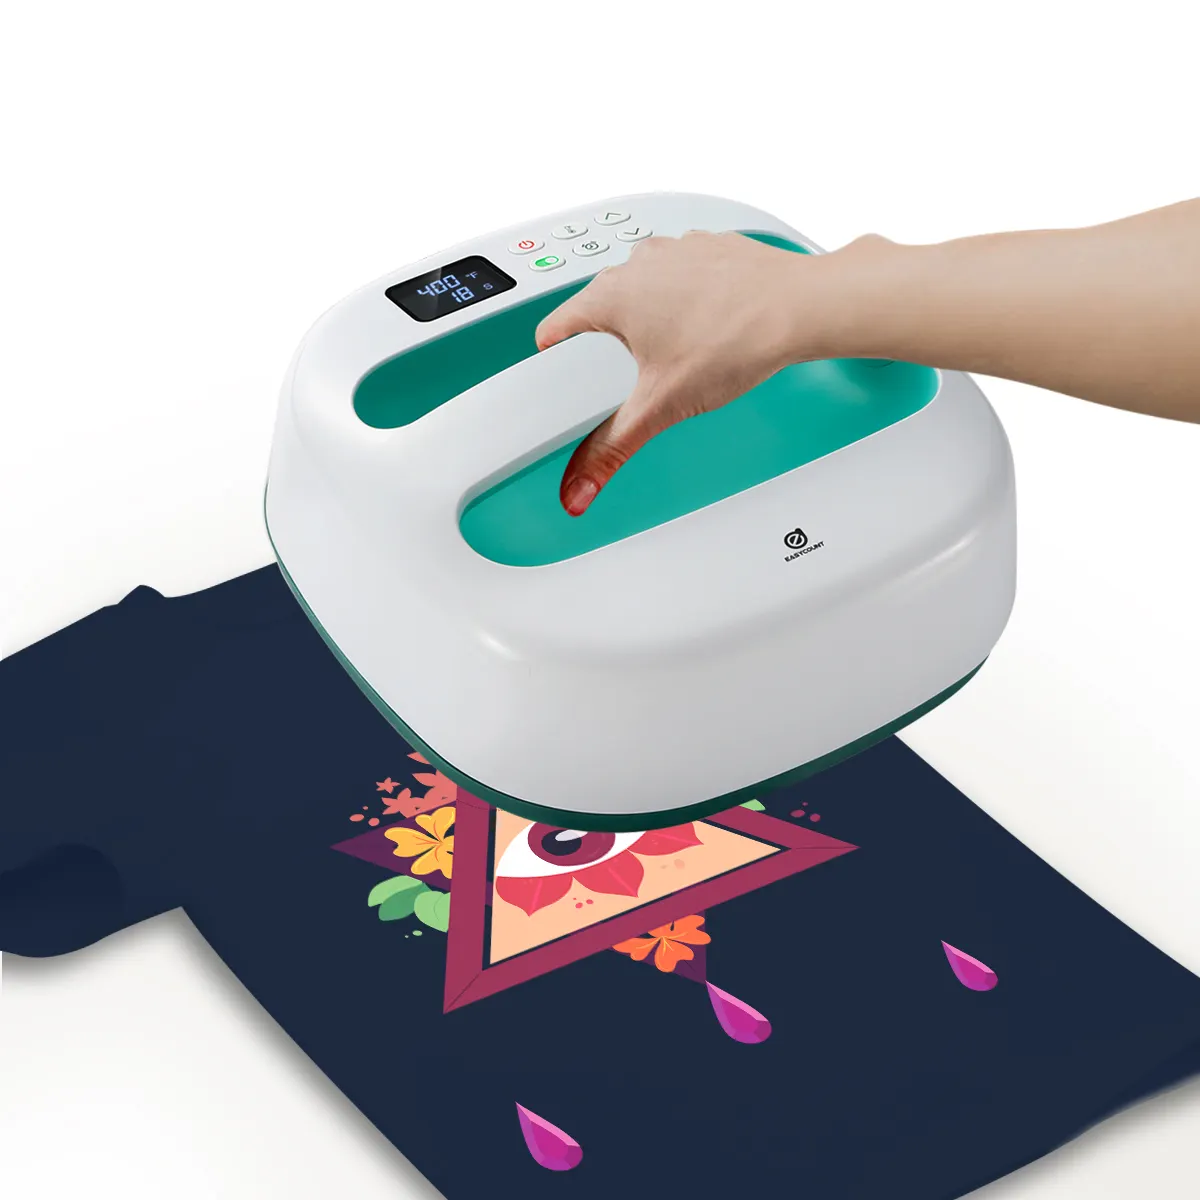 EASYCOUNT 휴대용 평판 cricut 열 프레스 기계 tshirt 인쇄 기계 프레스 전송 모든 5 하나의 뜨거운 판매 디지털